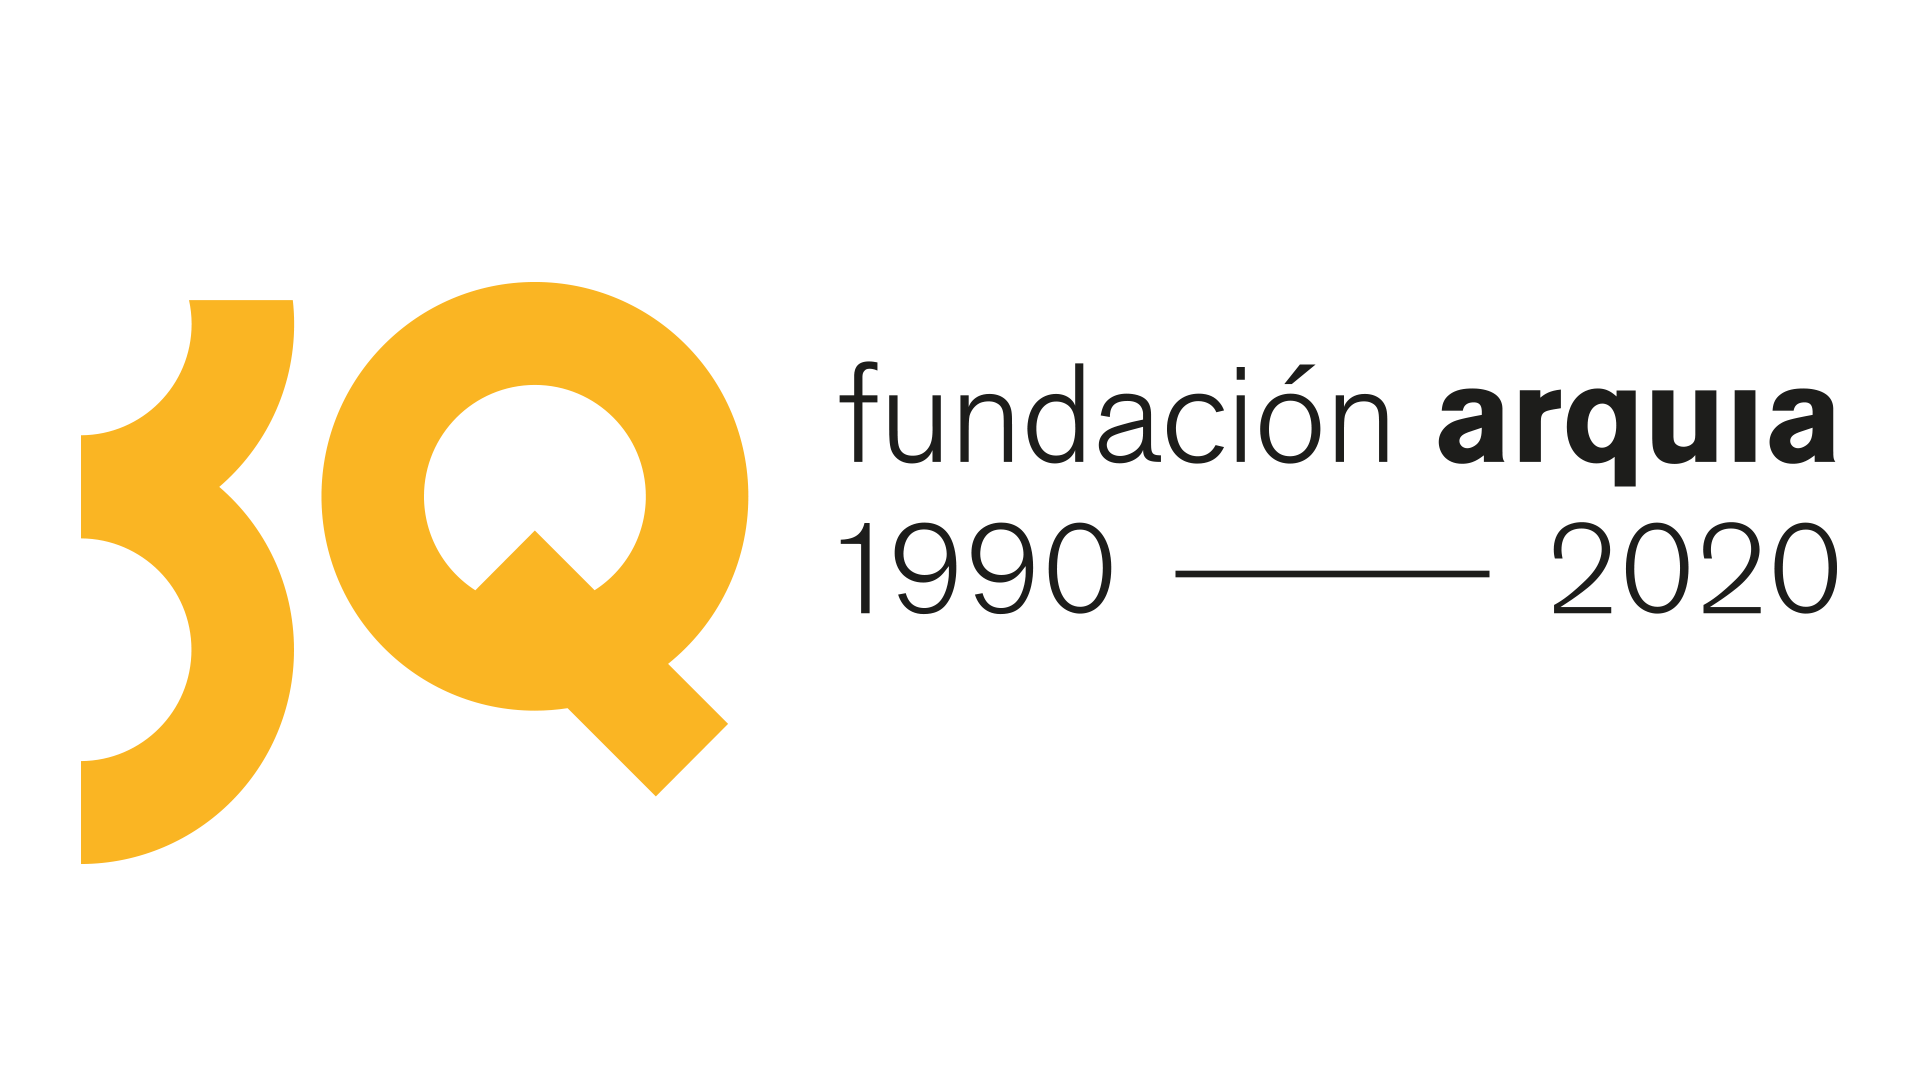 Aniversario de la Fundación Arquia